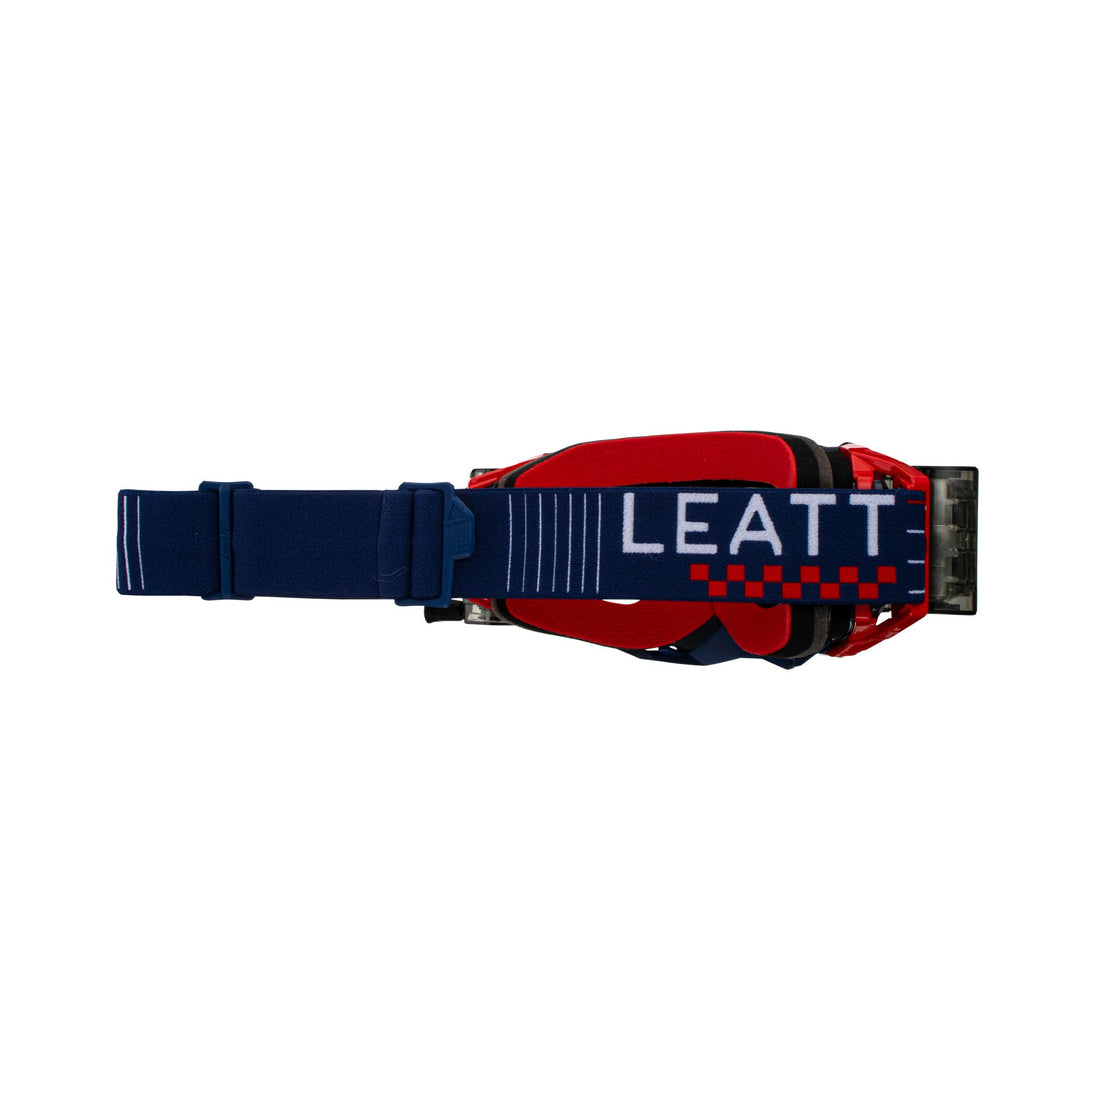 Leatt 5.5 snelheidsafrolbril v23